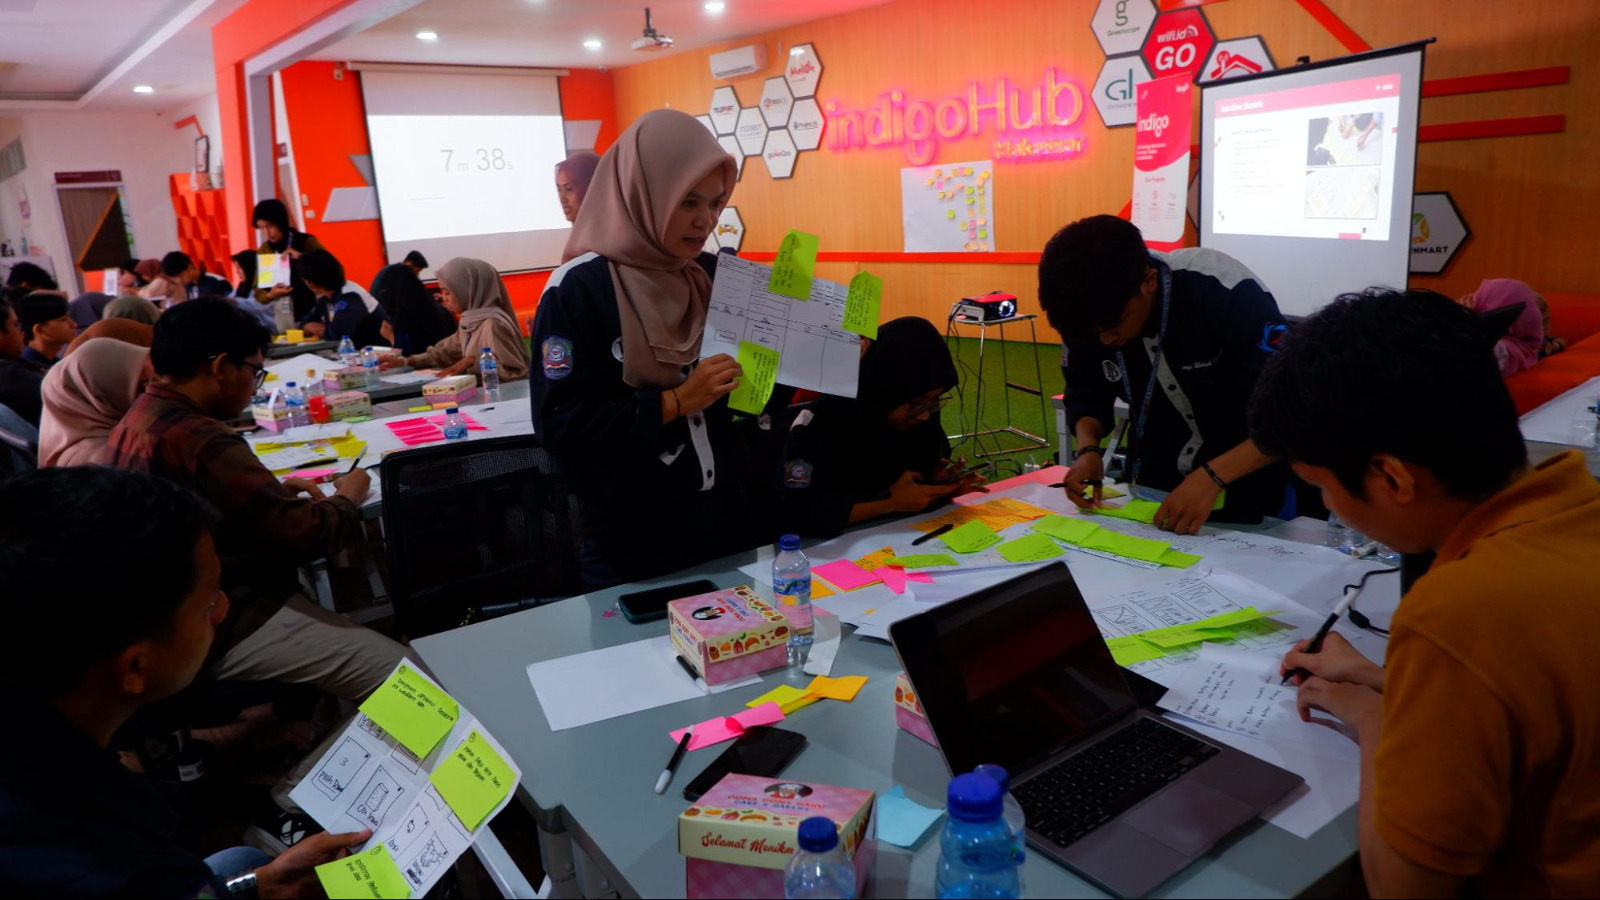 Inisiatif Telkom Membentuk Calon Pendiri Startup Digital di Makassar Melalui Event #Hack4ID Sulawesi Selatan